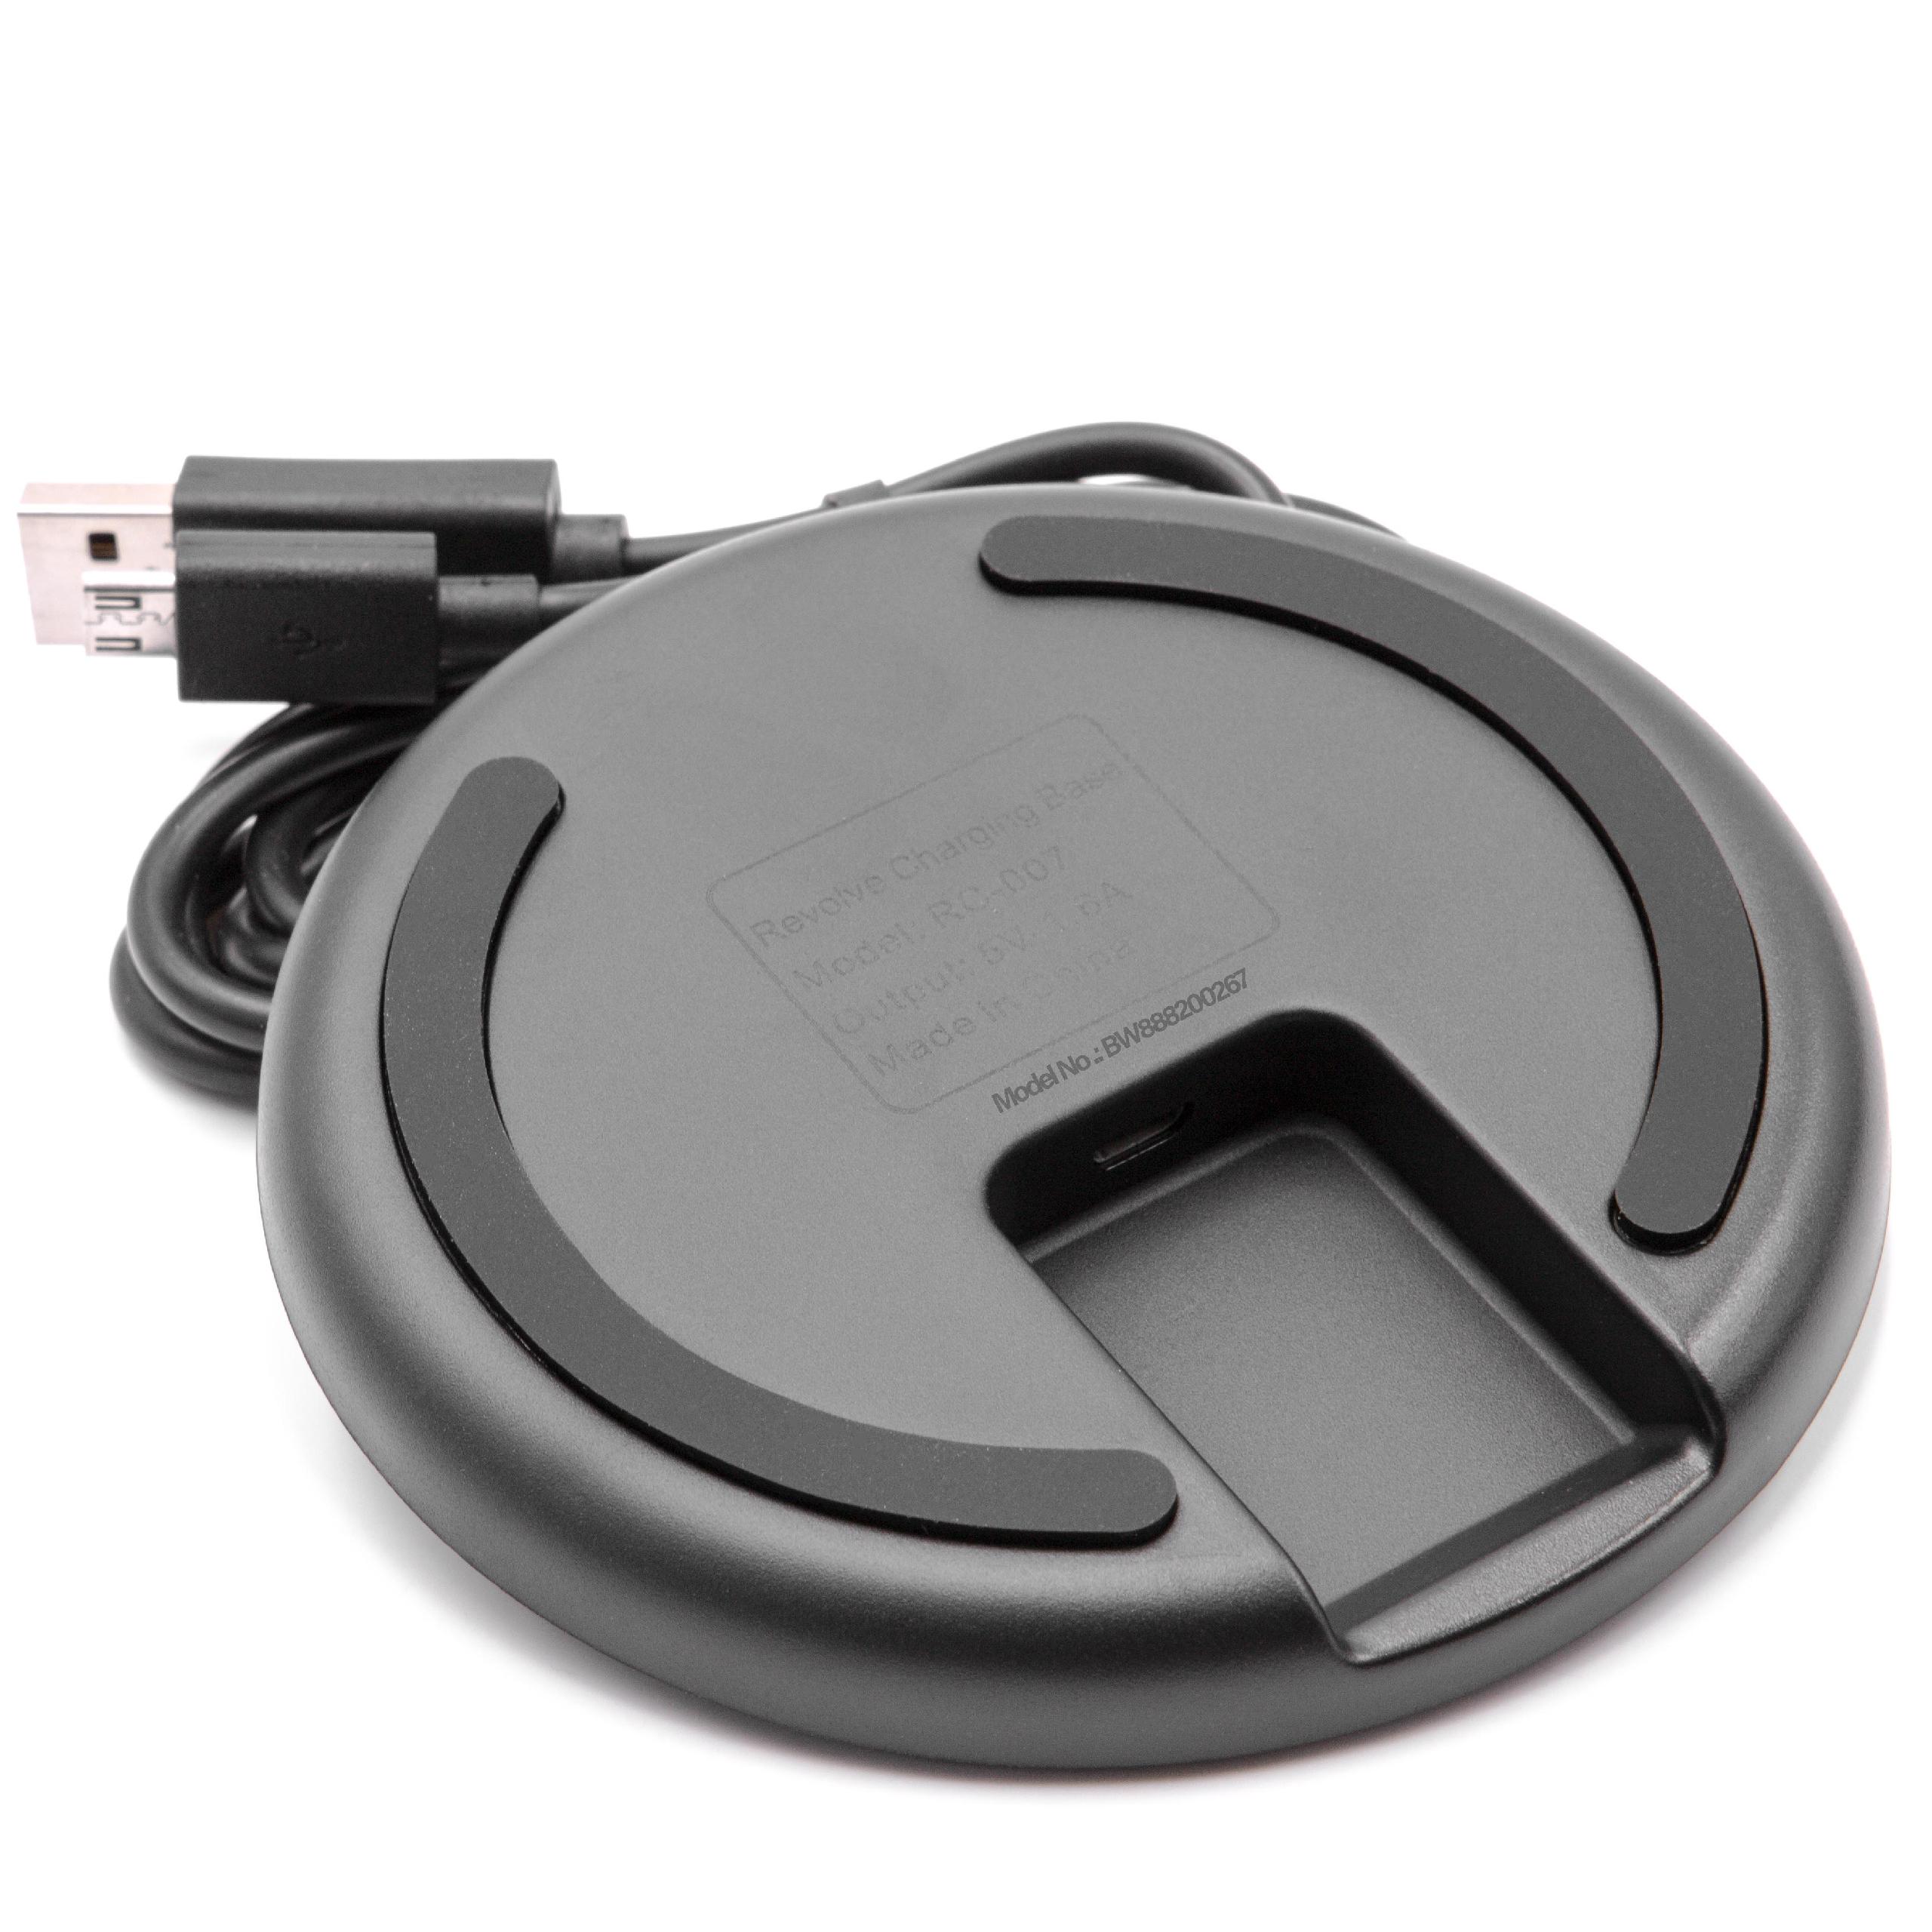 Station USB pour enceinte Bose SoundLink Revolve, Revolve+ - socle + câble micro USB, 95 cm noir